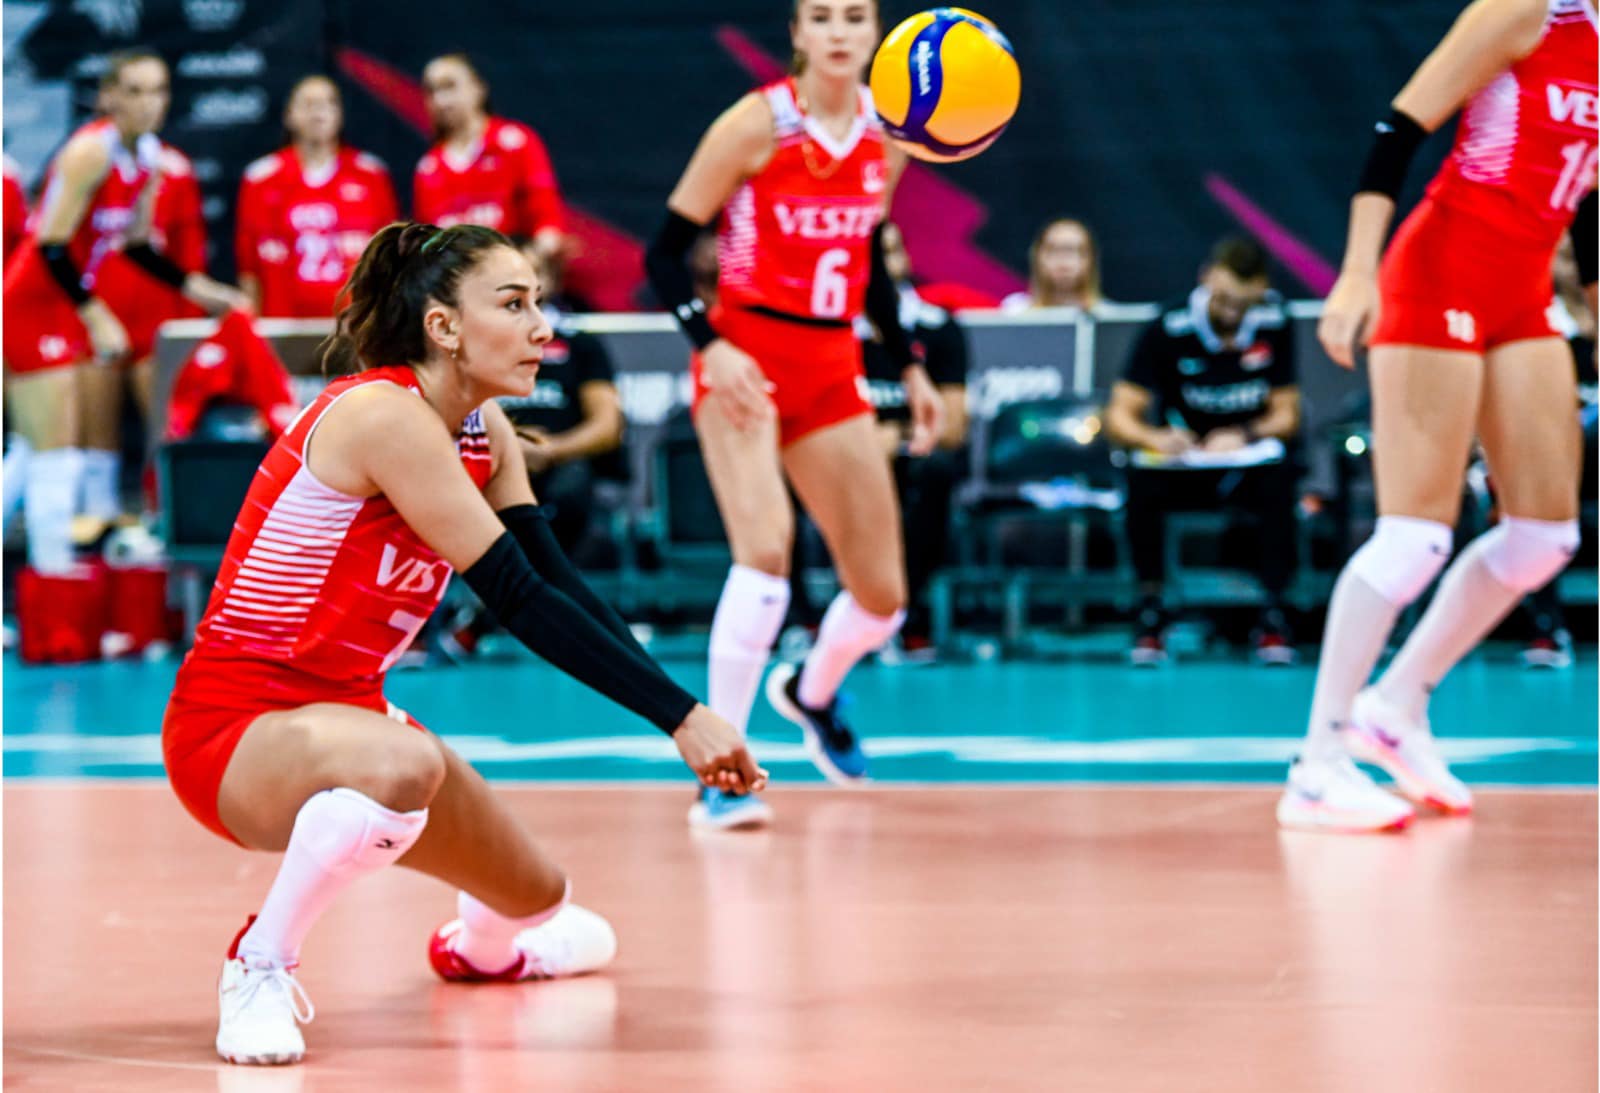 Türkiye wins FIVB Women's World Championship title after beating China